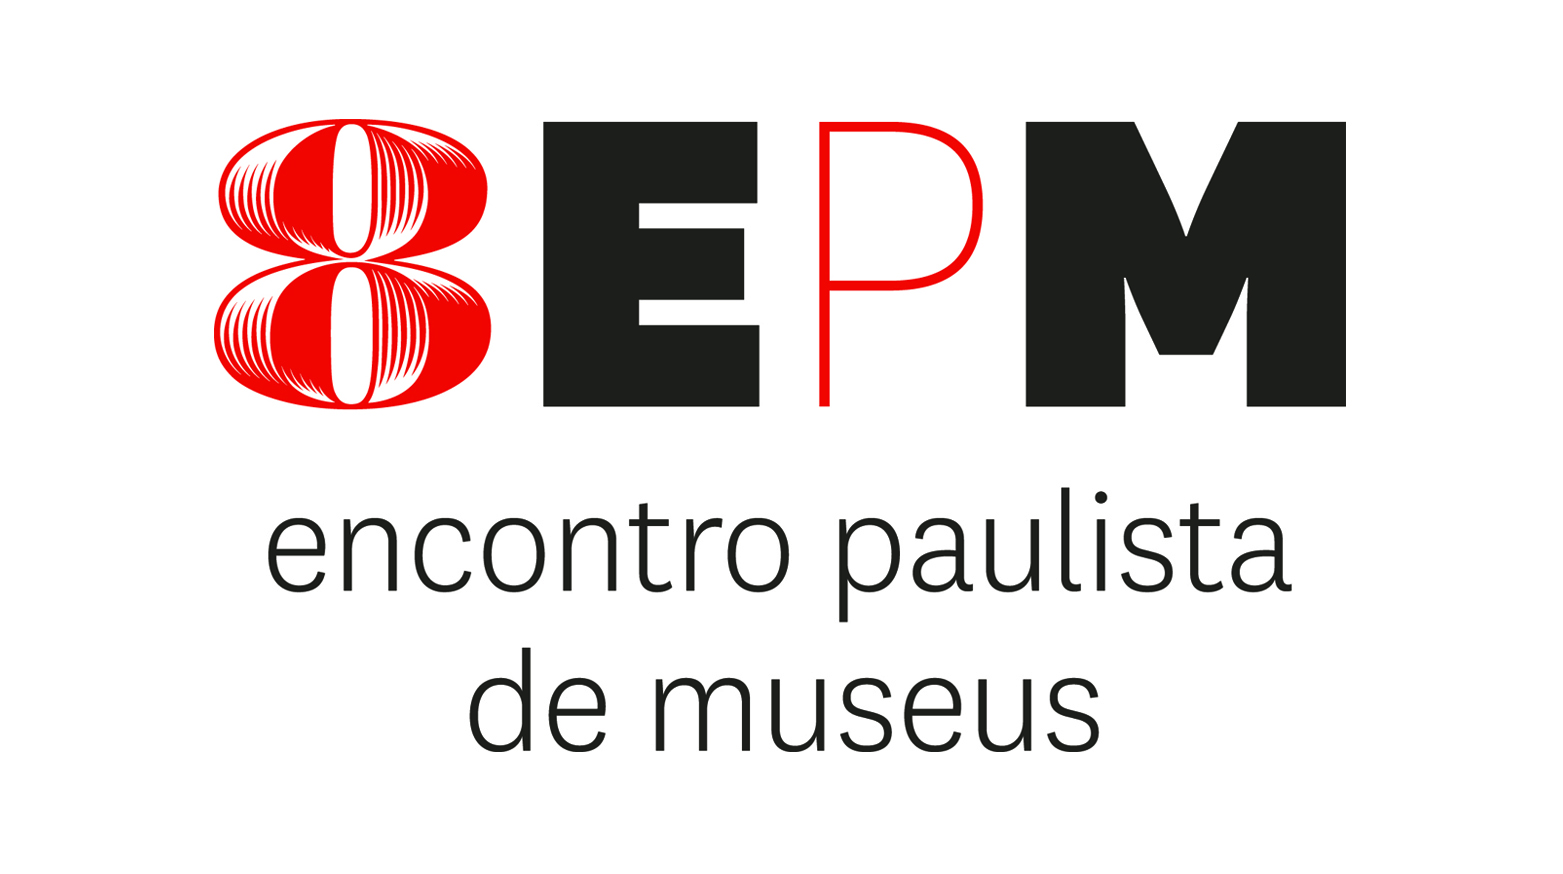 8º Encontro Paulista de Museus - 13 a 15 de junho de 2016 